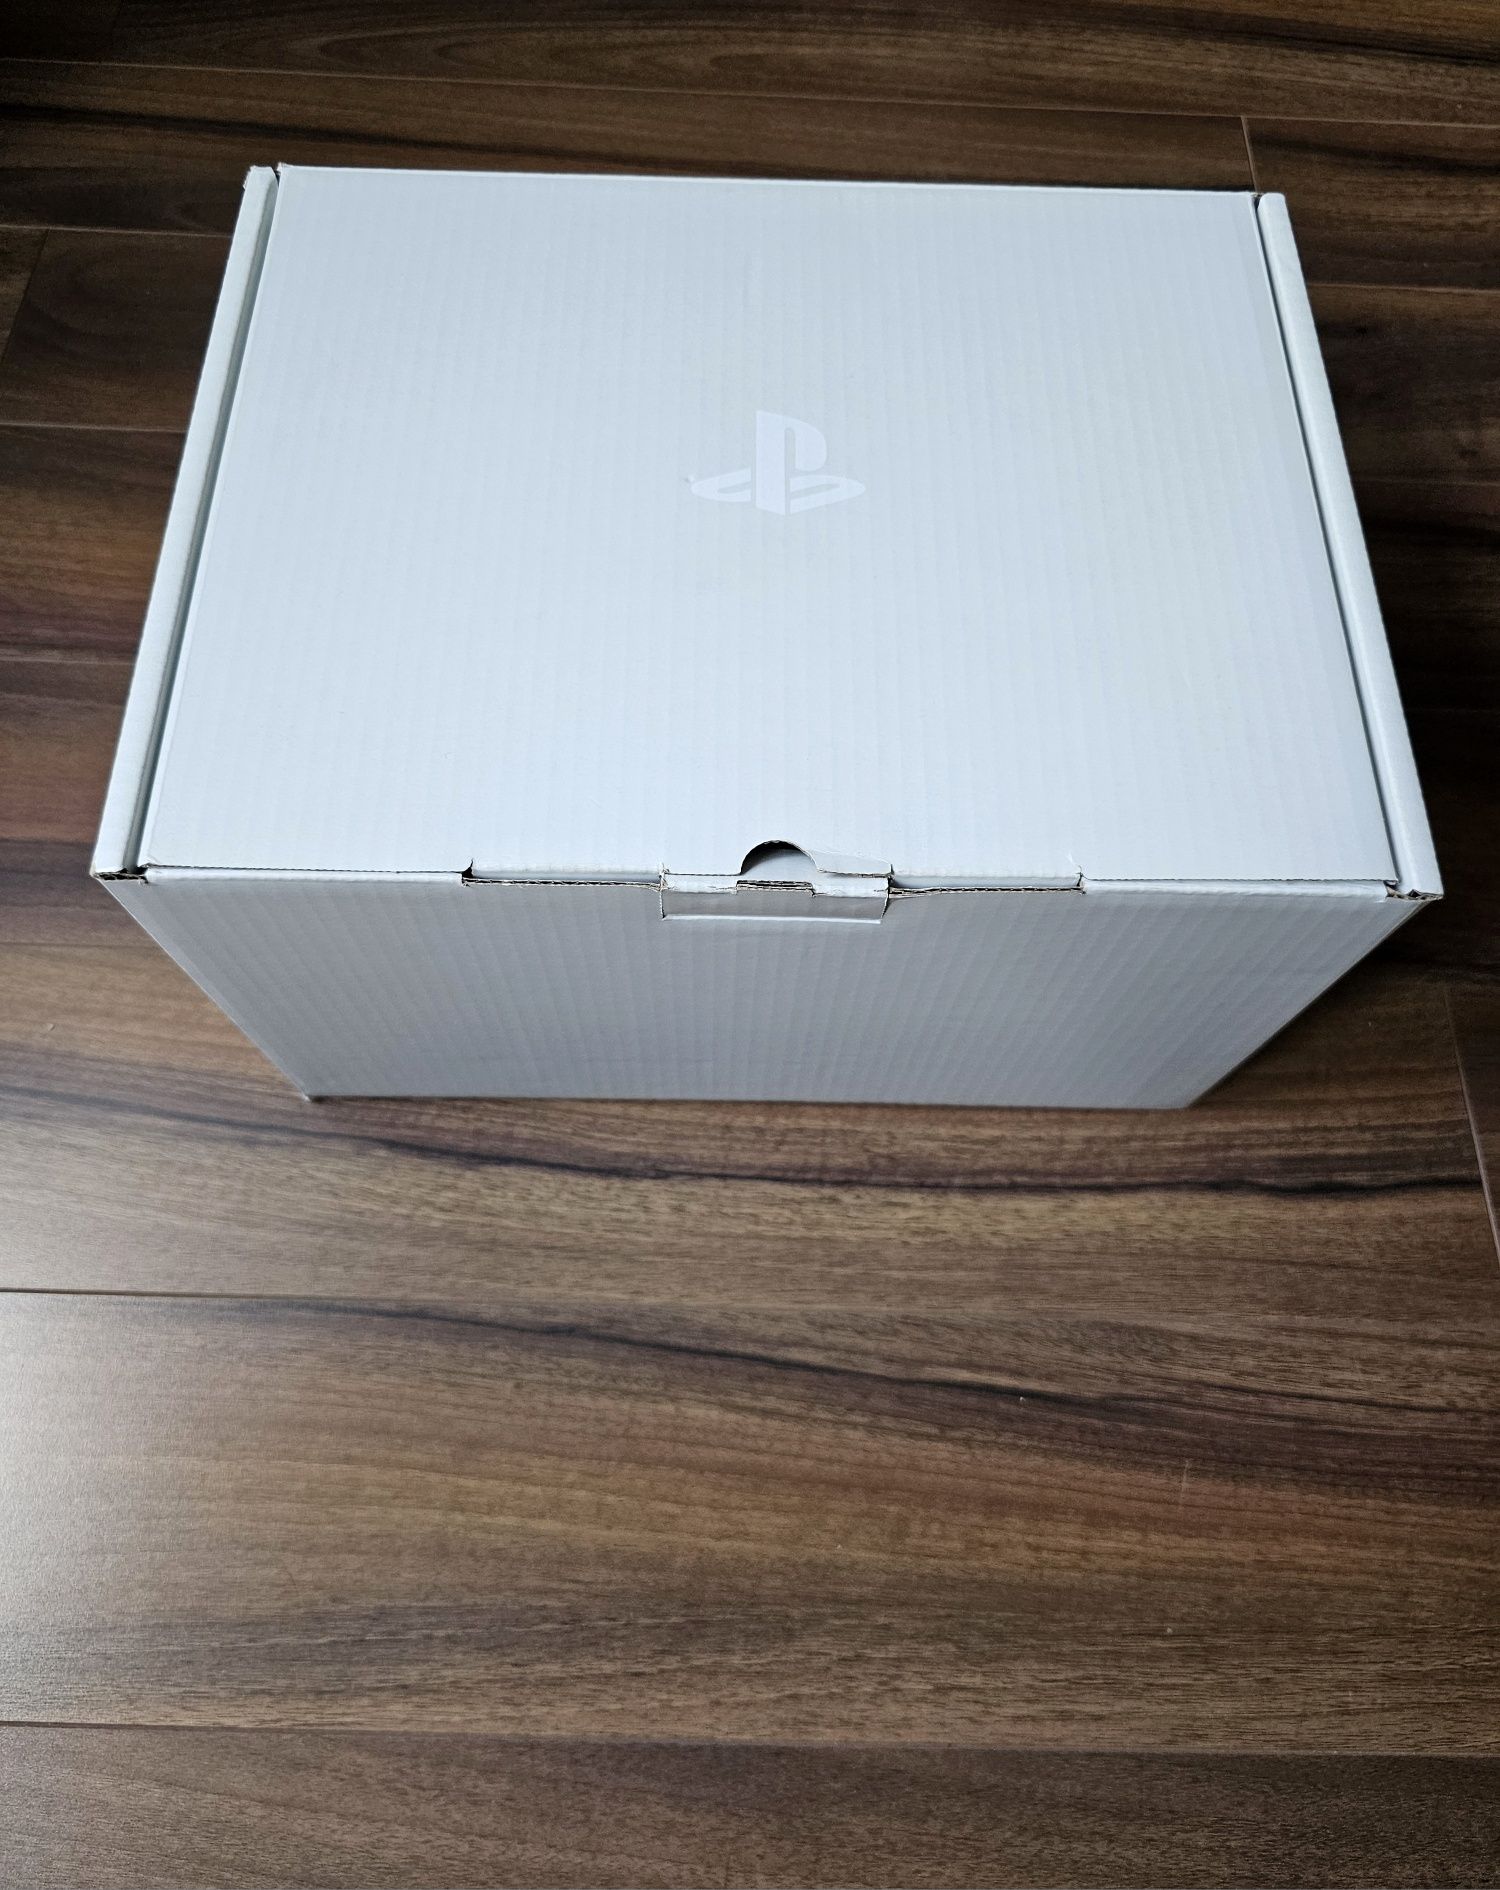 Pudełko do PlayStation VR